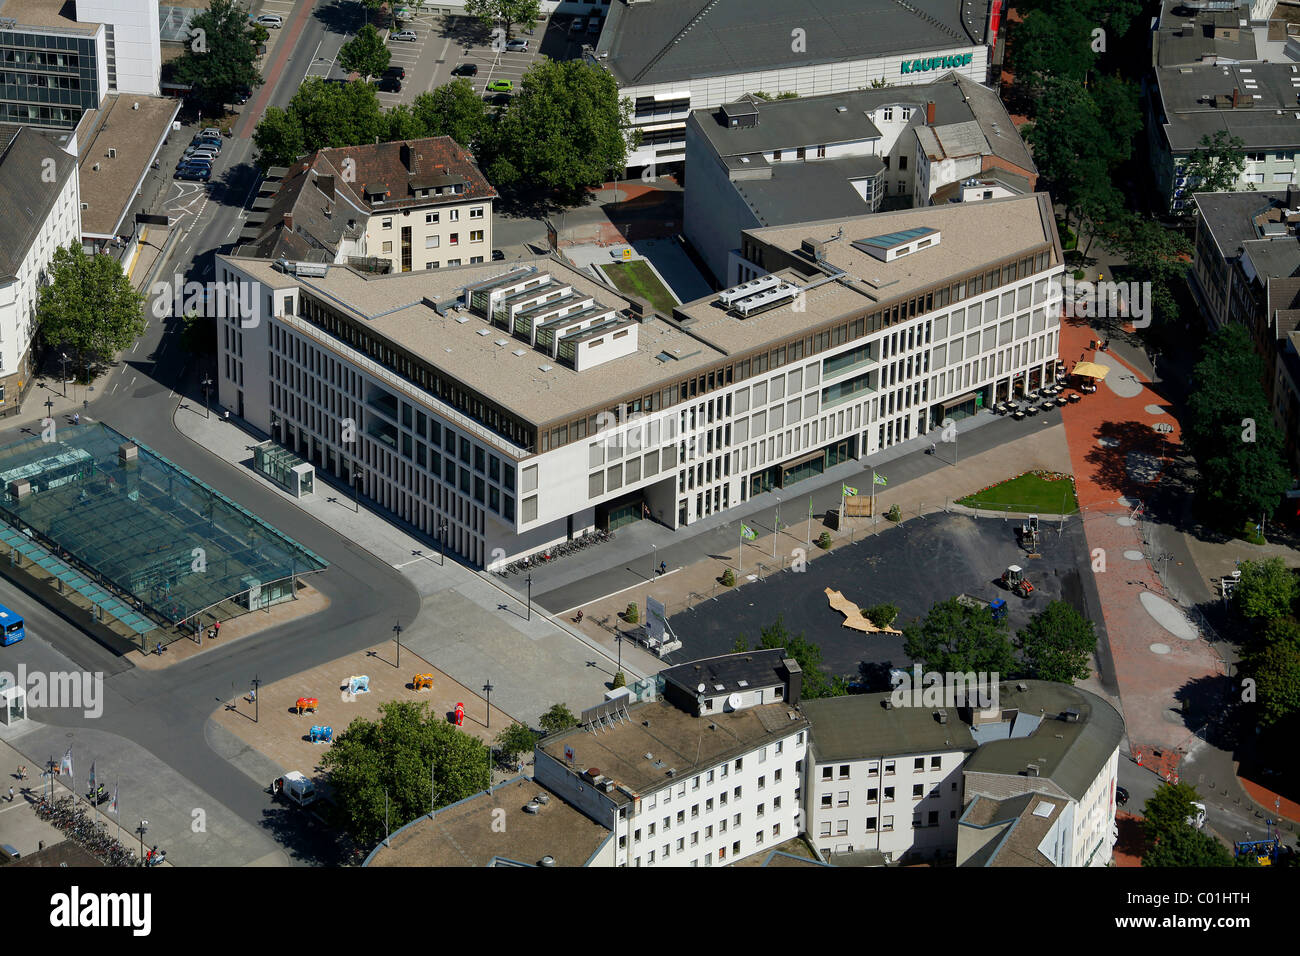 Aerial view, Heinrich-von-Kleist-Forum building, public library, Hamm adult  education centre, Hamm, Ruhr area Stock Photo - Alamy